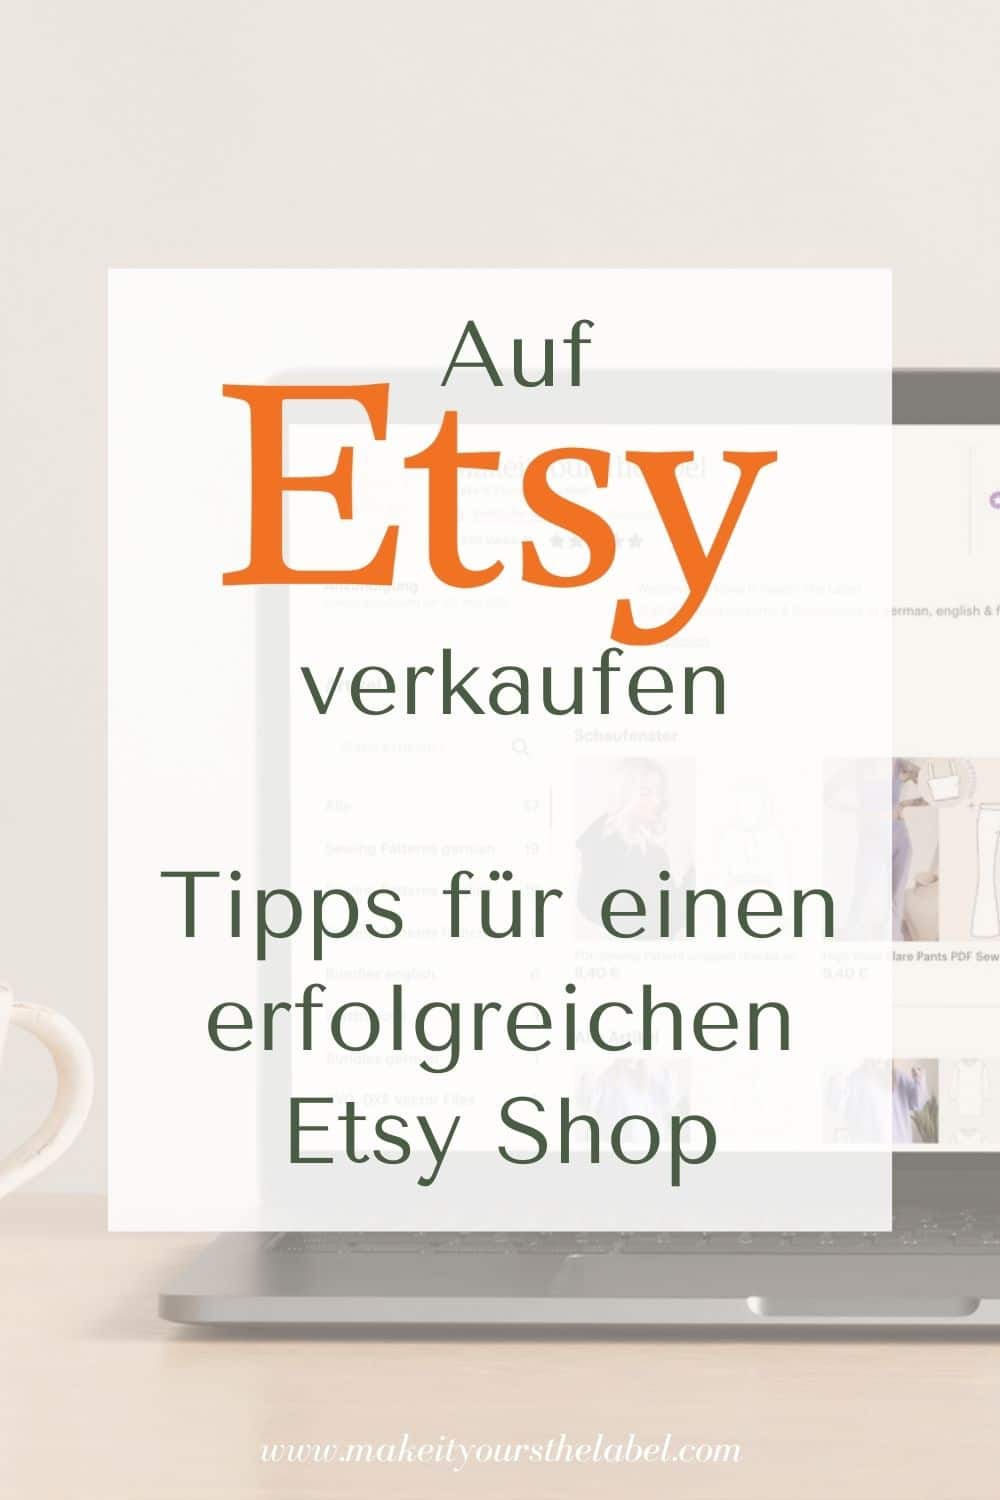 Etsy Shop eröffnen_Tipps um erfolgreich auf etsy zu verkaufen